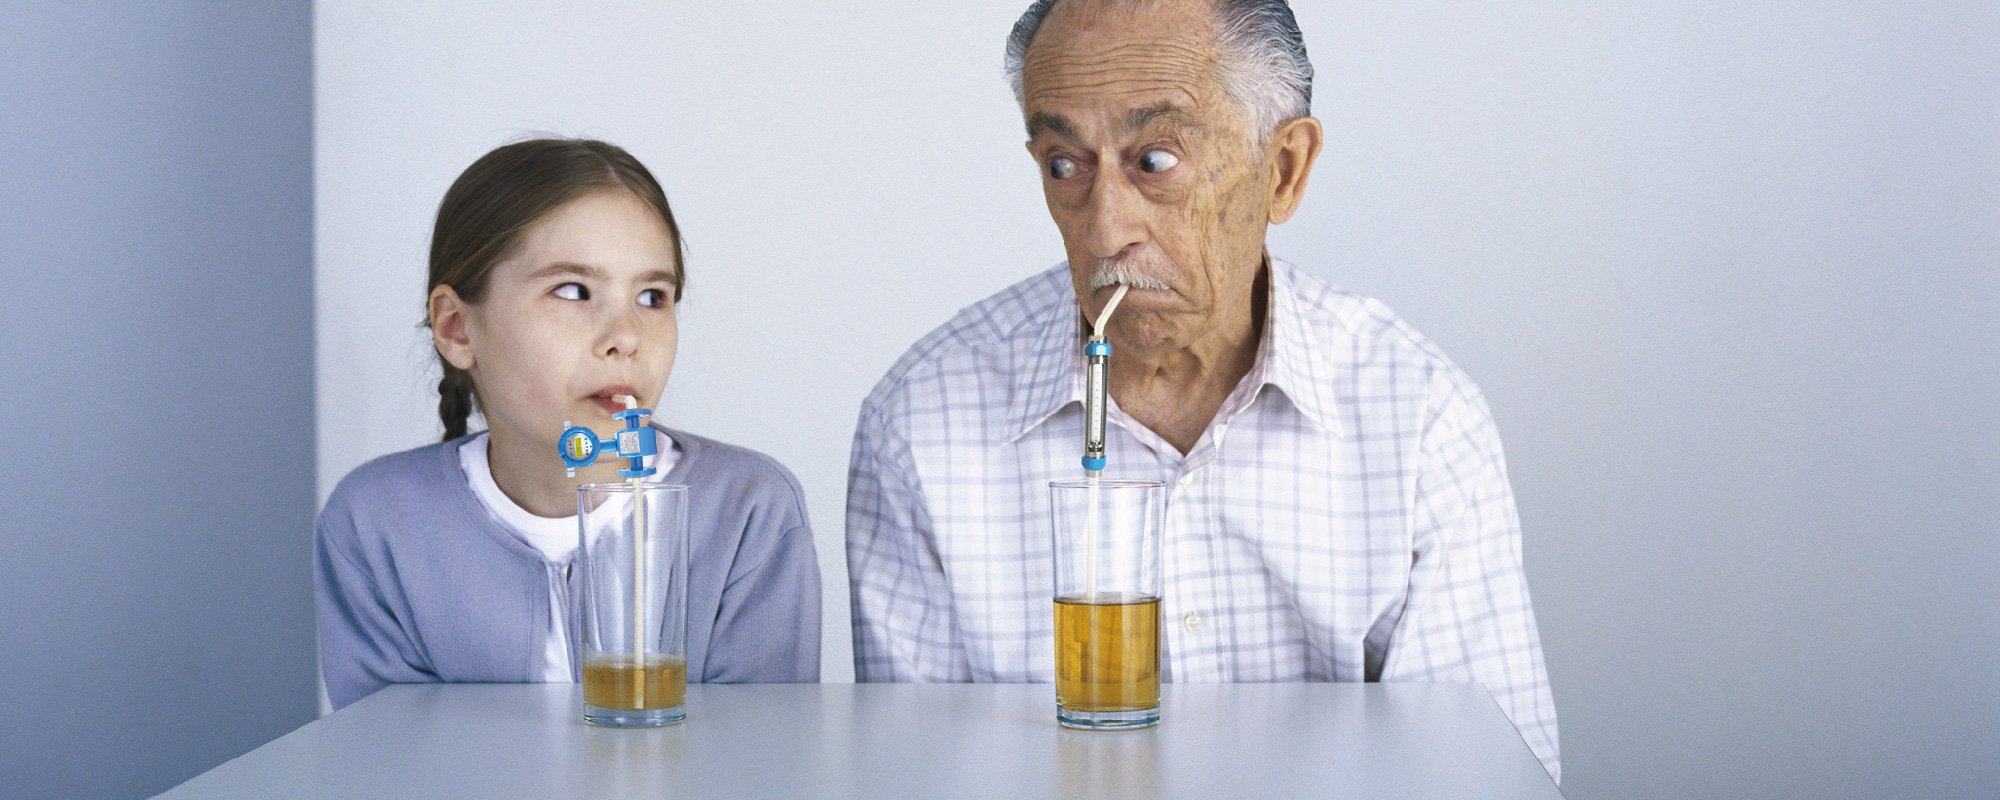 Junge Frau und älterer Mann trinken aus Glas mit einem Trinkhalm___